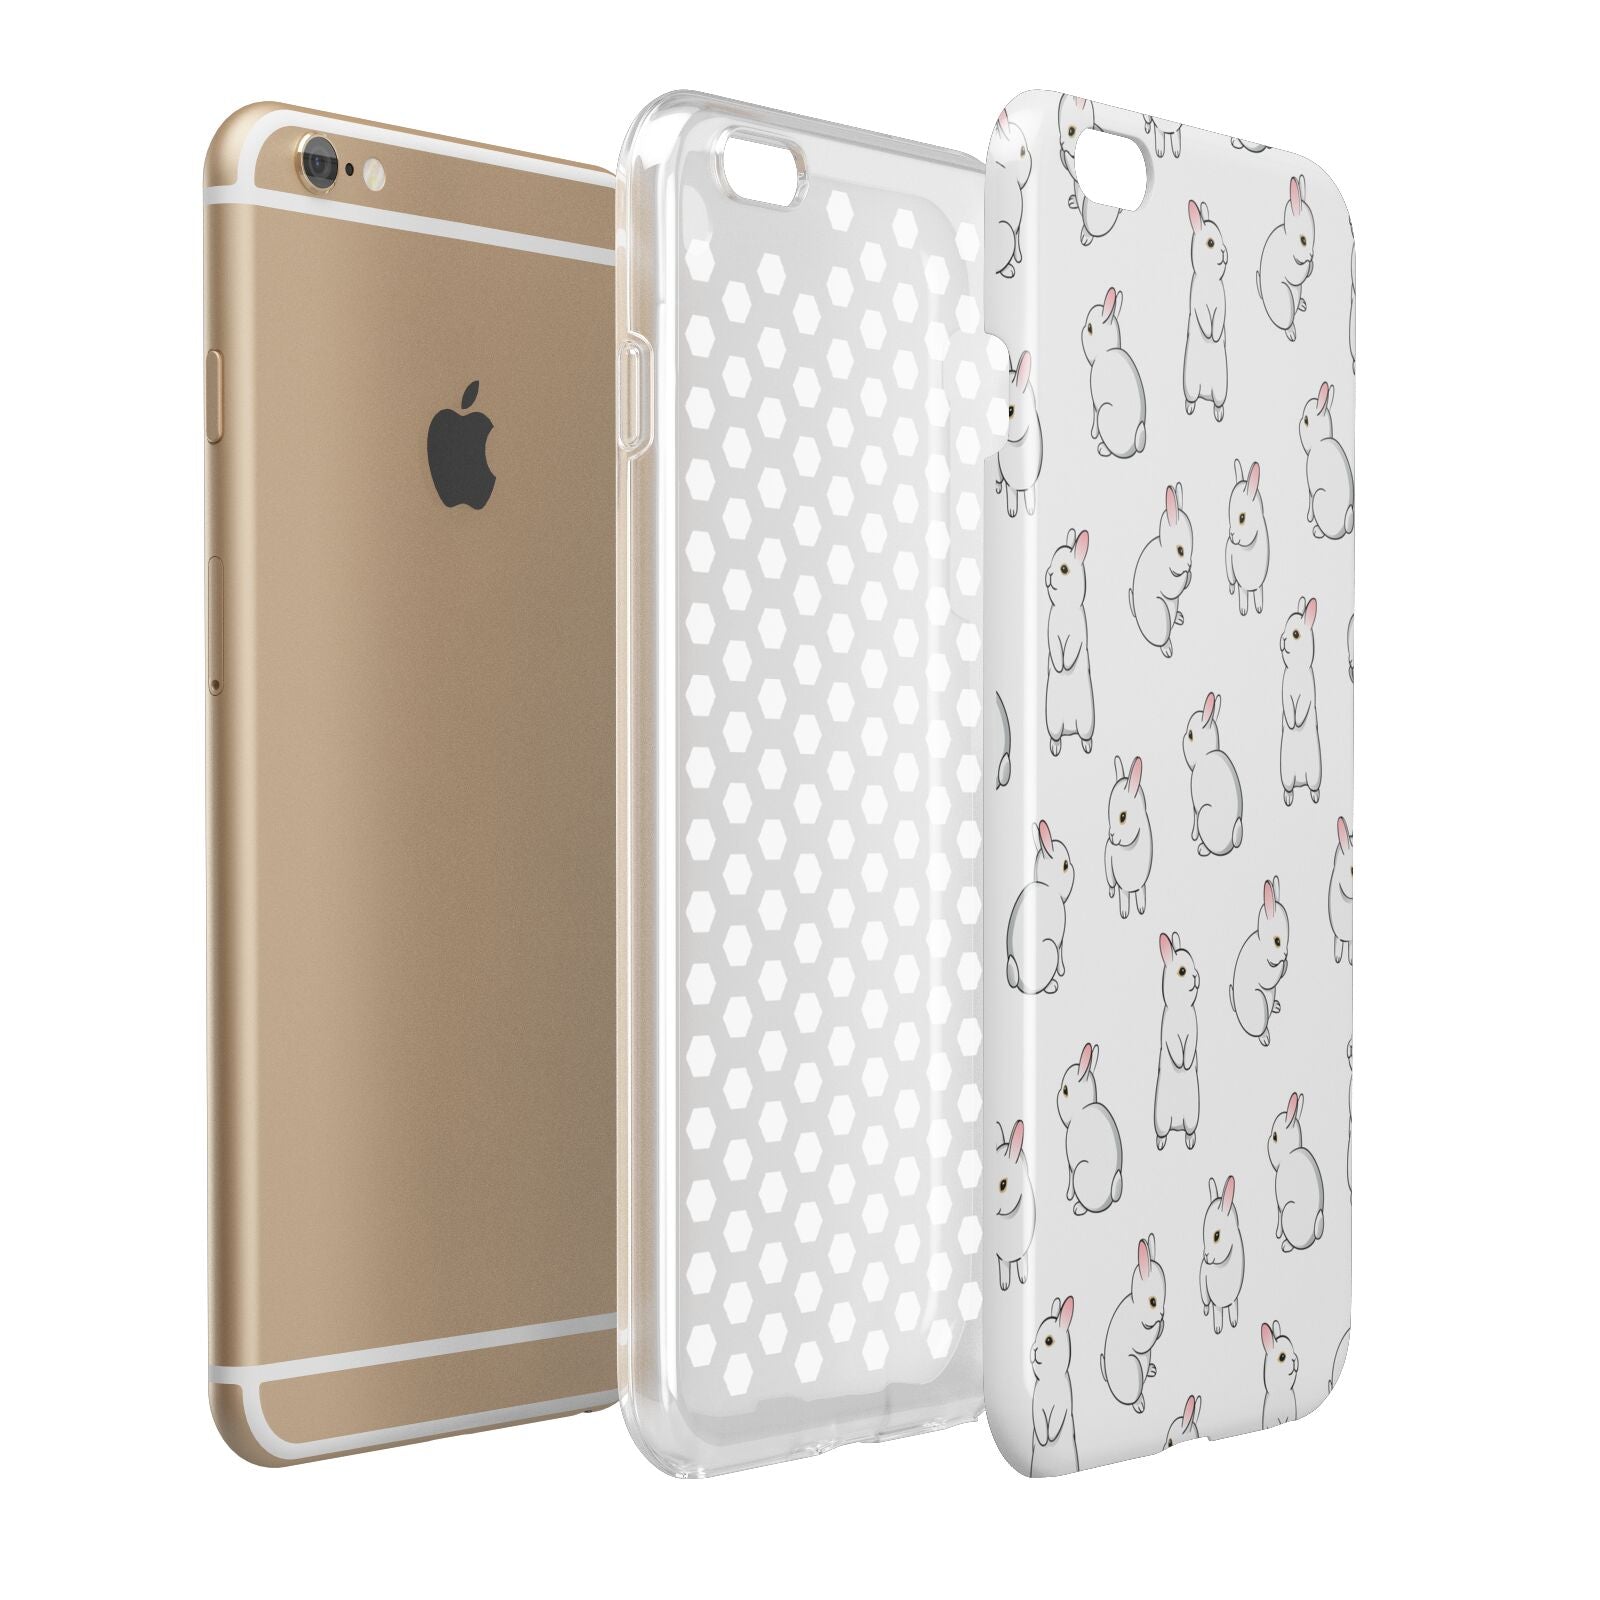 Bunny Rabbit Apple iPhone 6 Plus 3D Tough Case Expand Detail Image